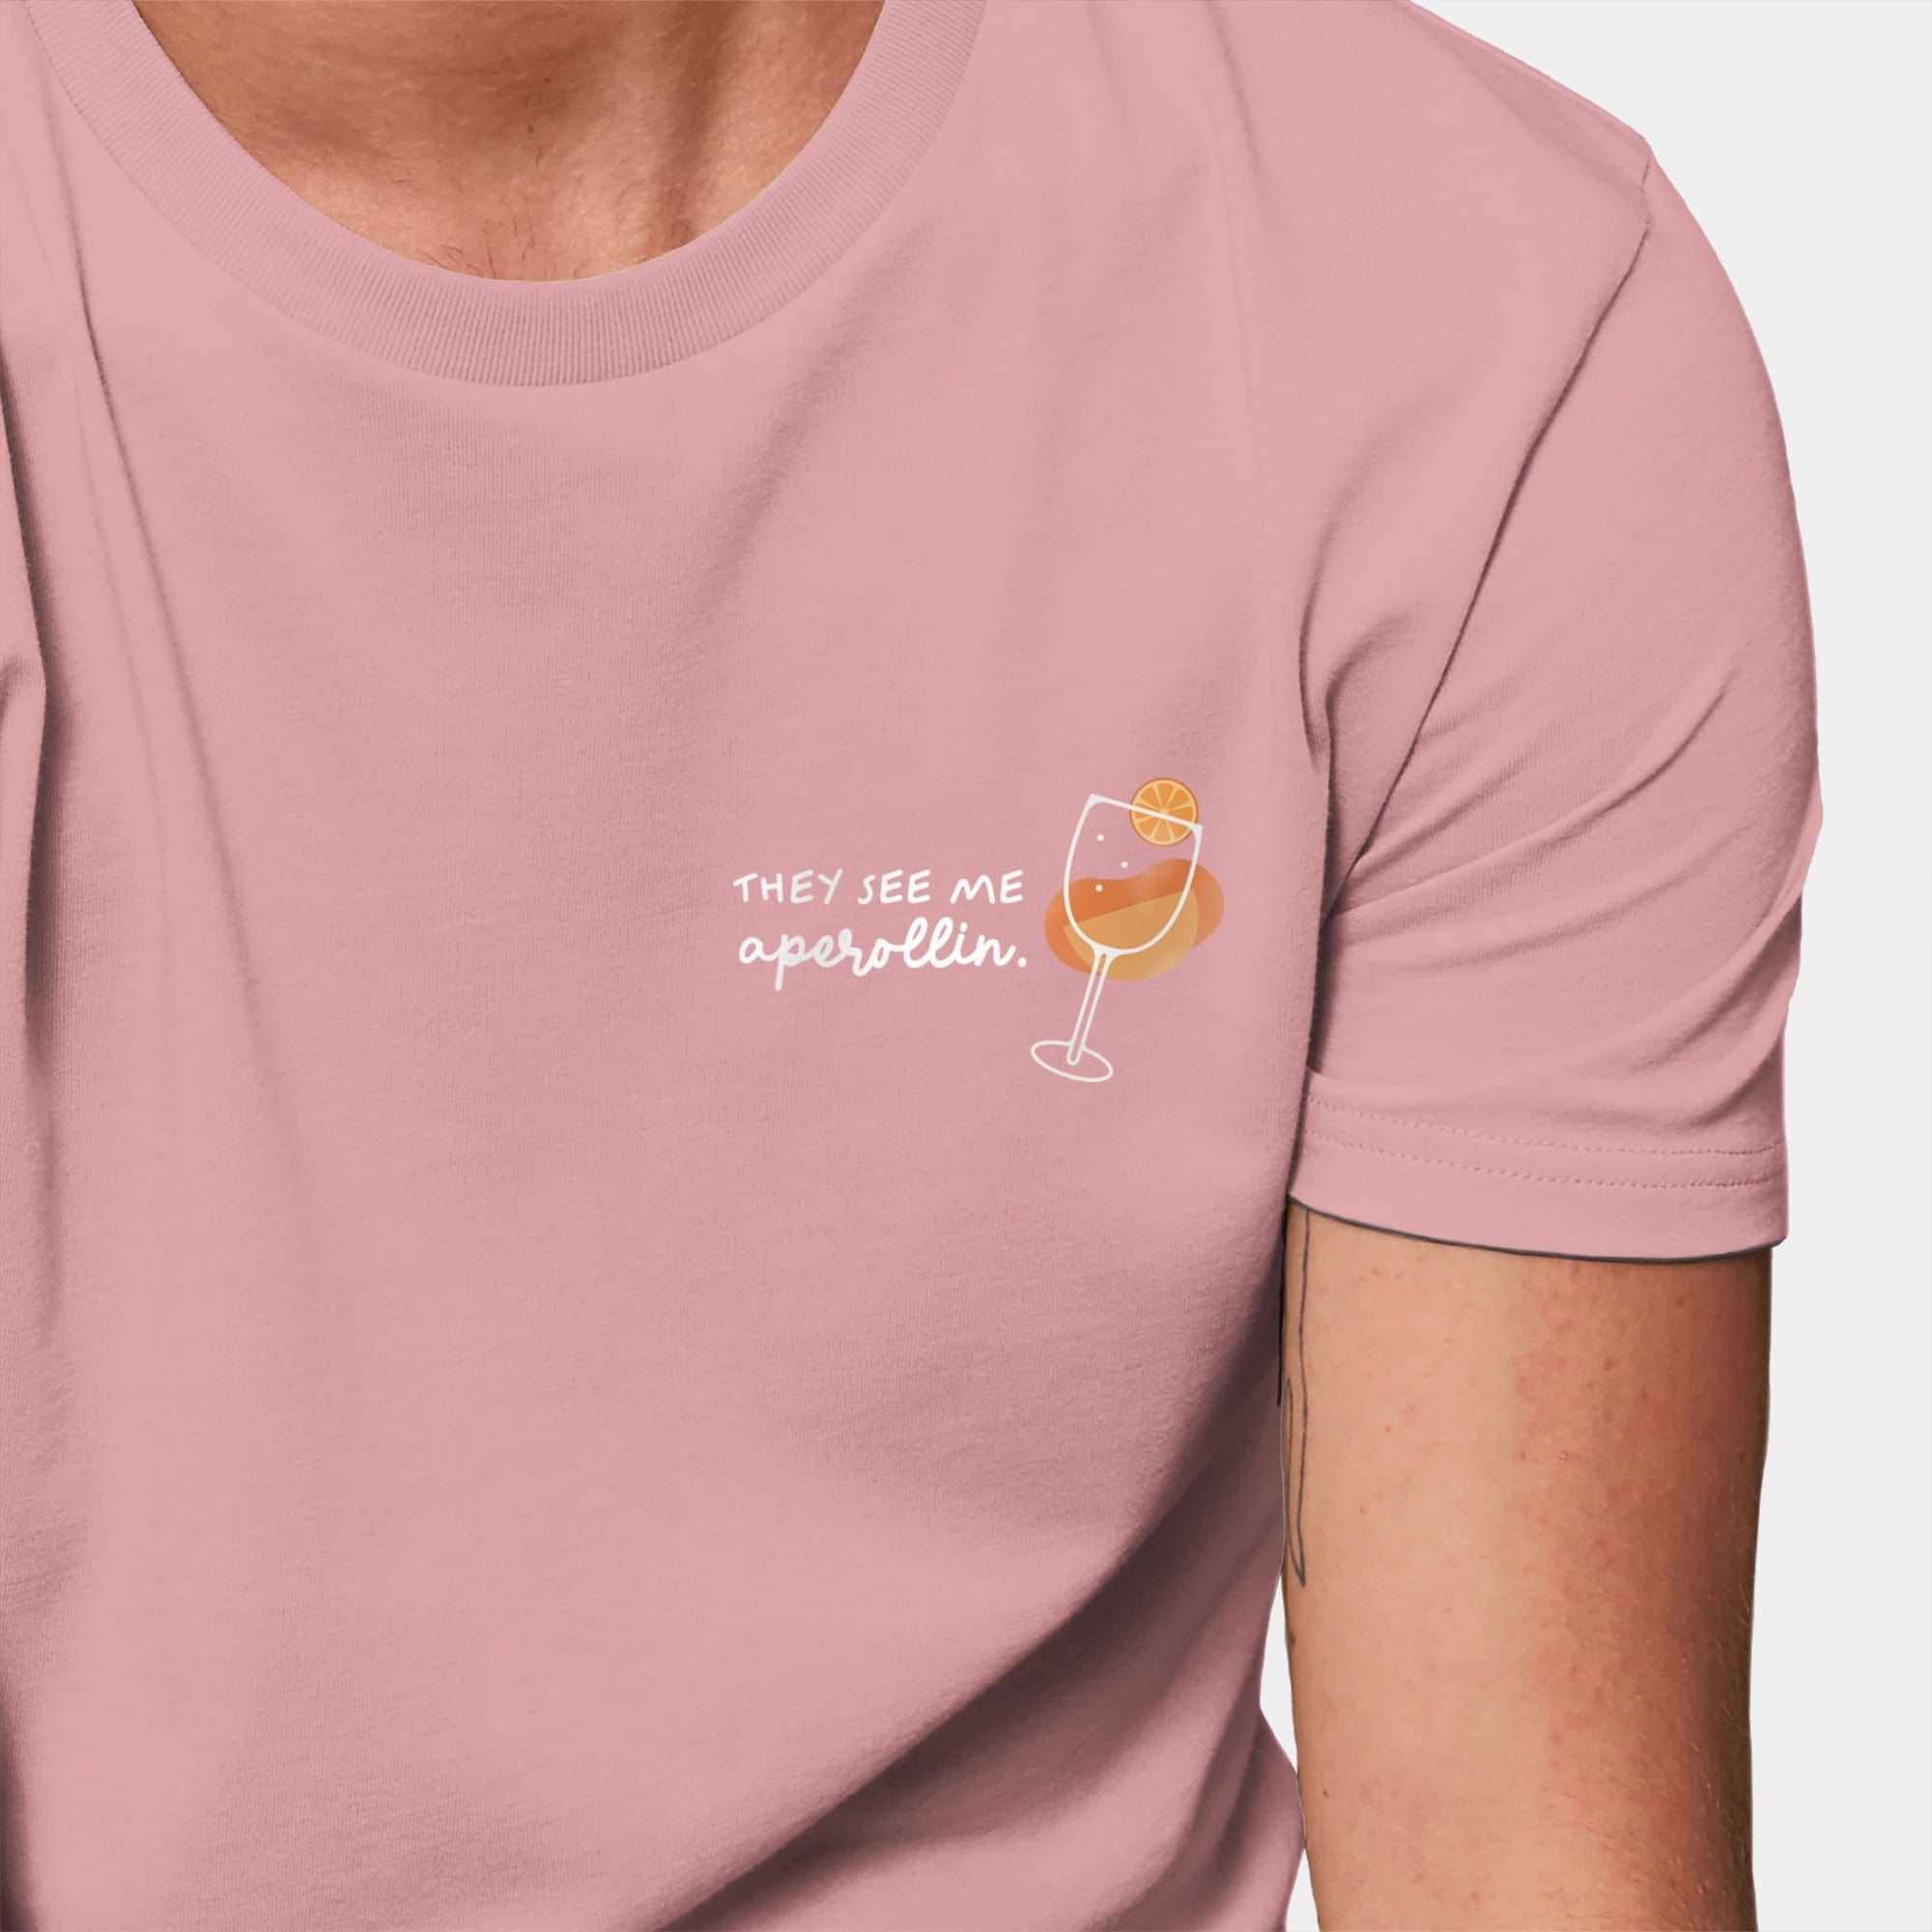 HEITER & LÄSSIG T-Shirt "Aperollin" XXS / canyon pink - aus nachhaltiger und fairer Produktion